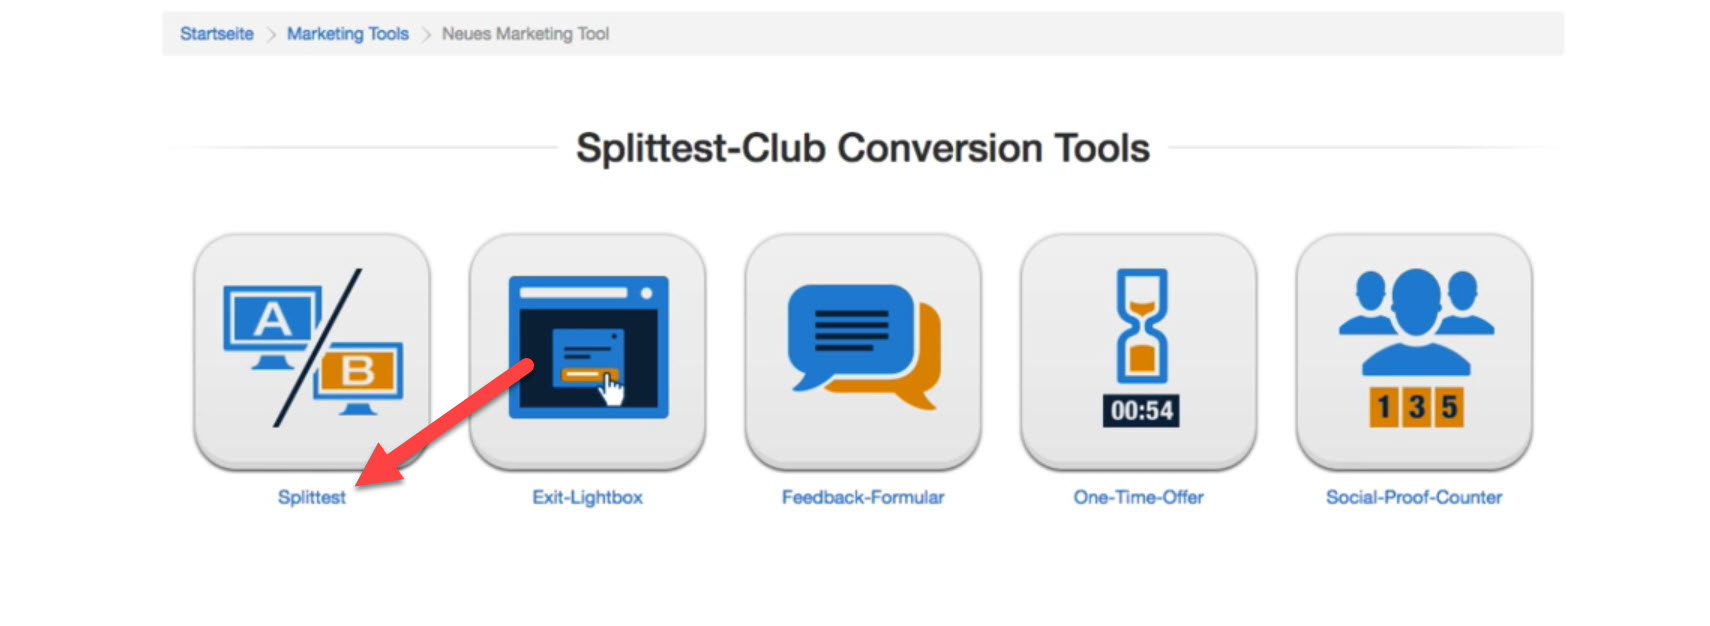 klicktipp-marketing-tools-splittest